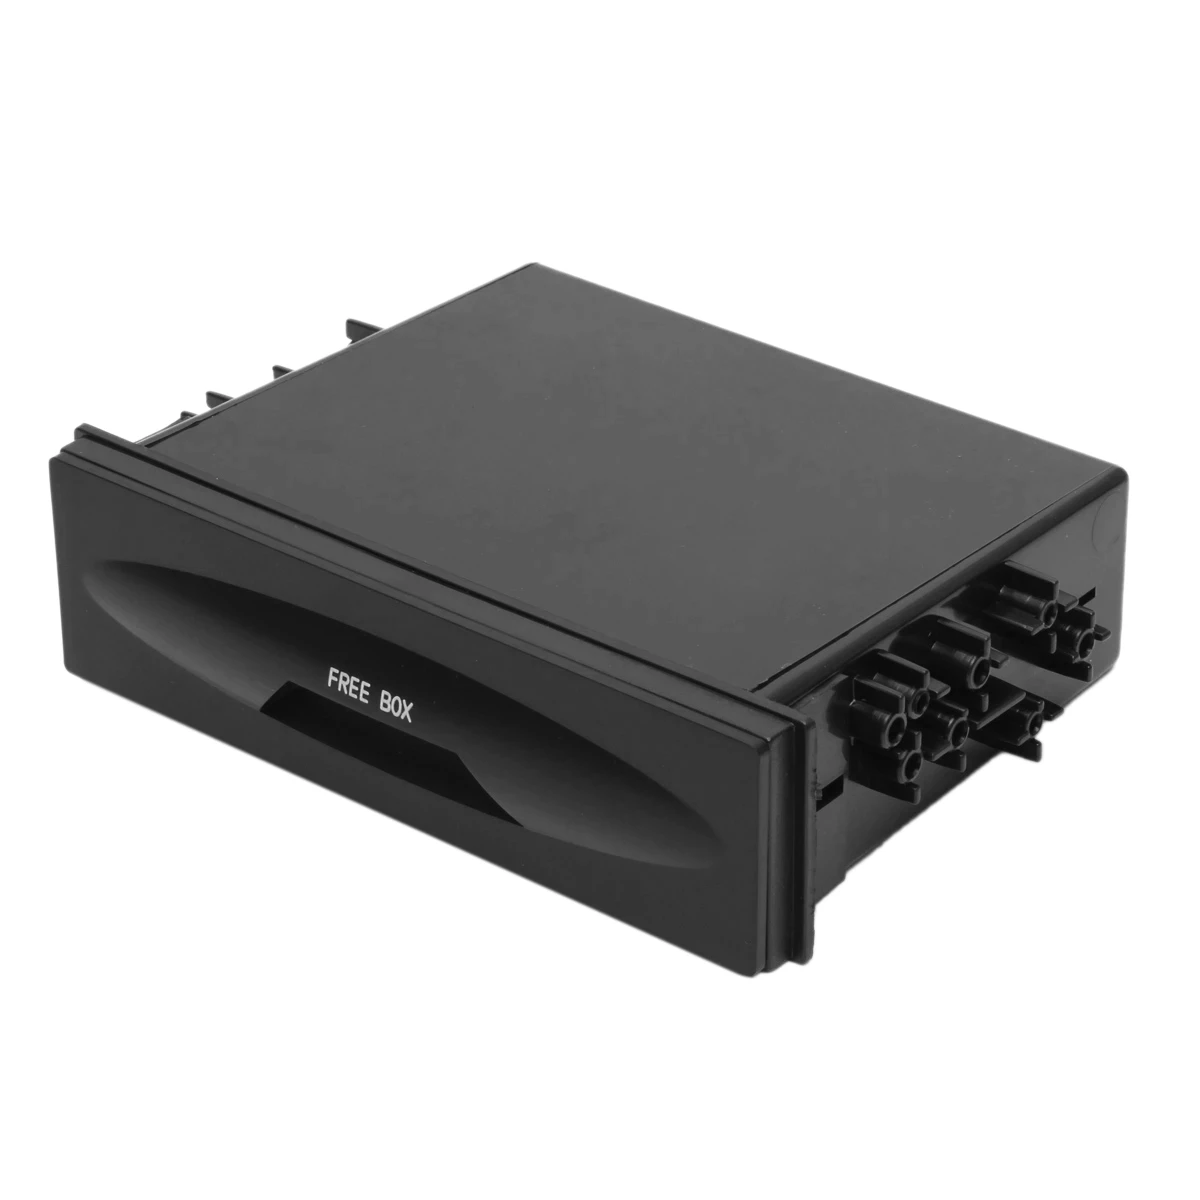 Универсална кутия за съхранение на автомобили CX-38 Еднослойна автоматична единична Din Dash радиоинсталация Pocket-Kit 177X50X120mm